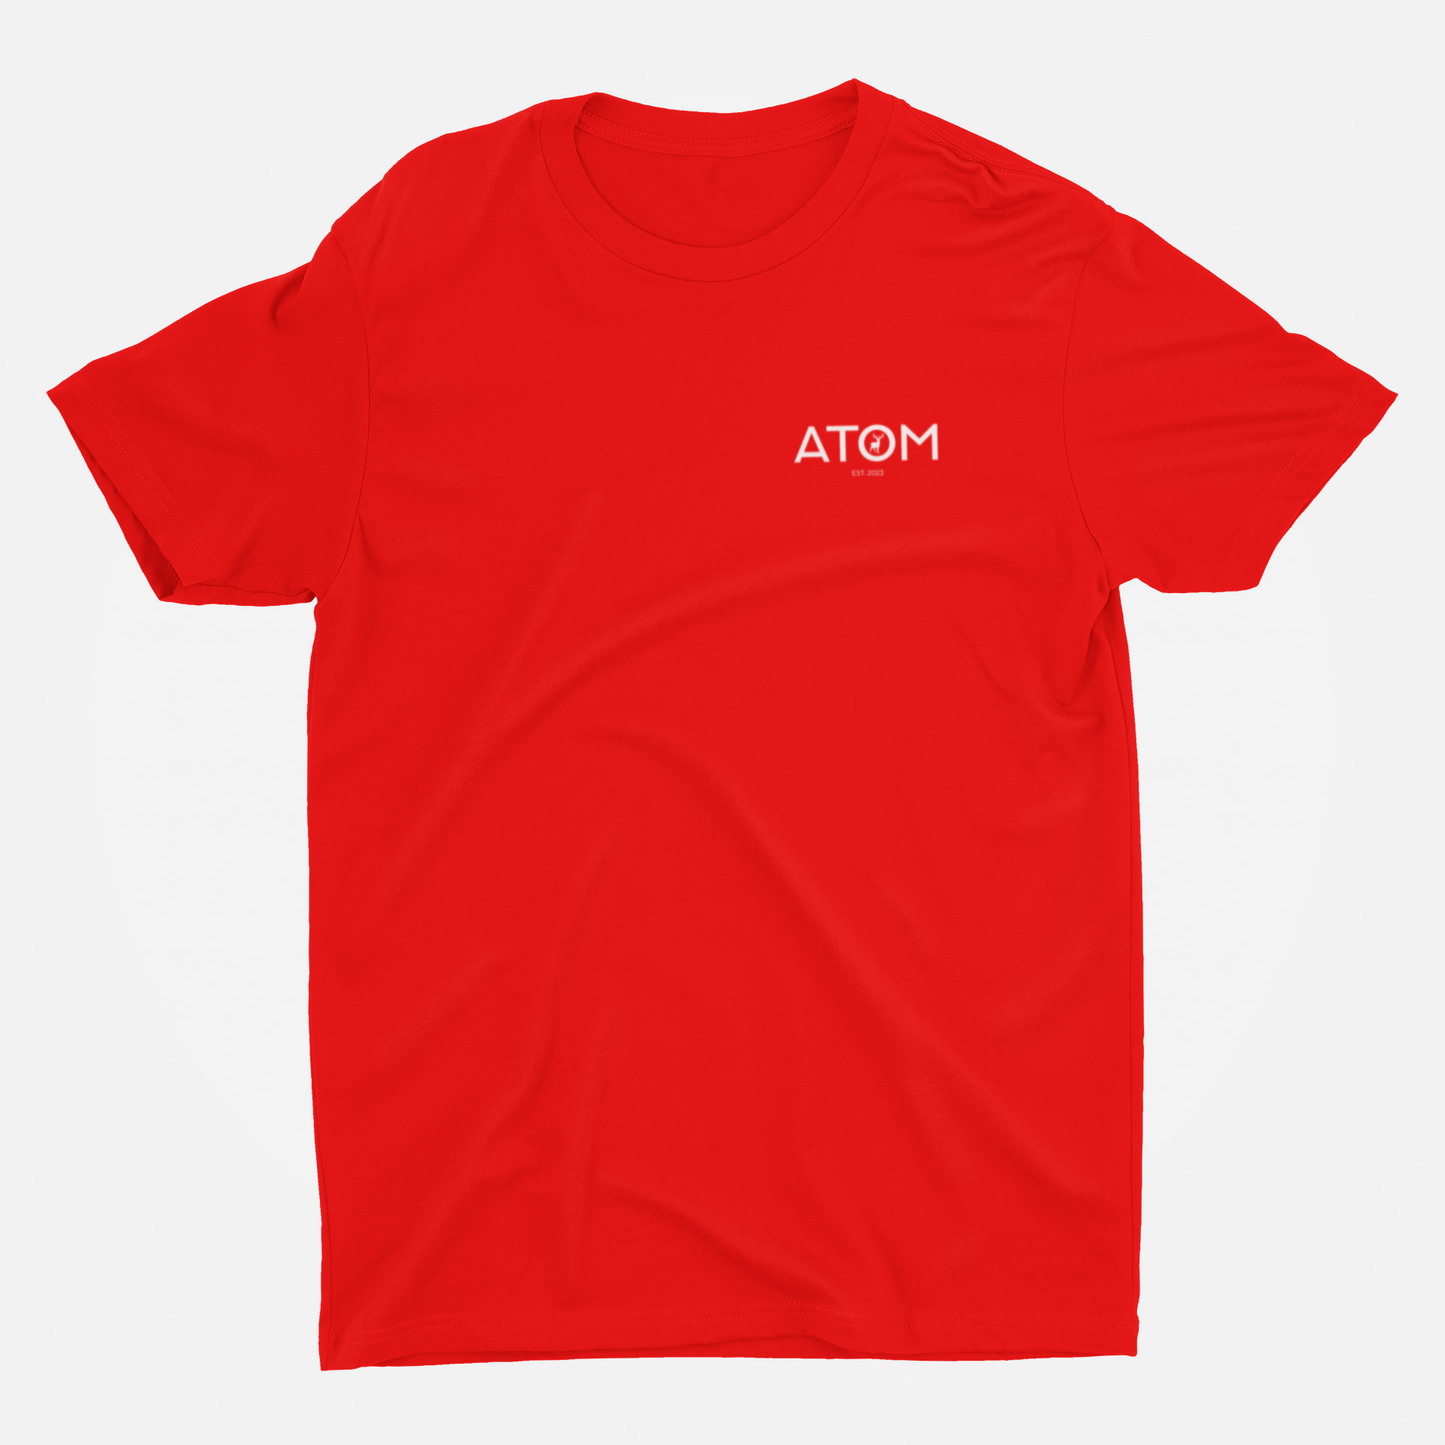 ATOM Logo Basic Red Round Neck T-Shirt for Men.